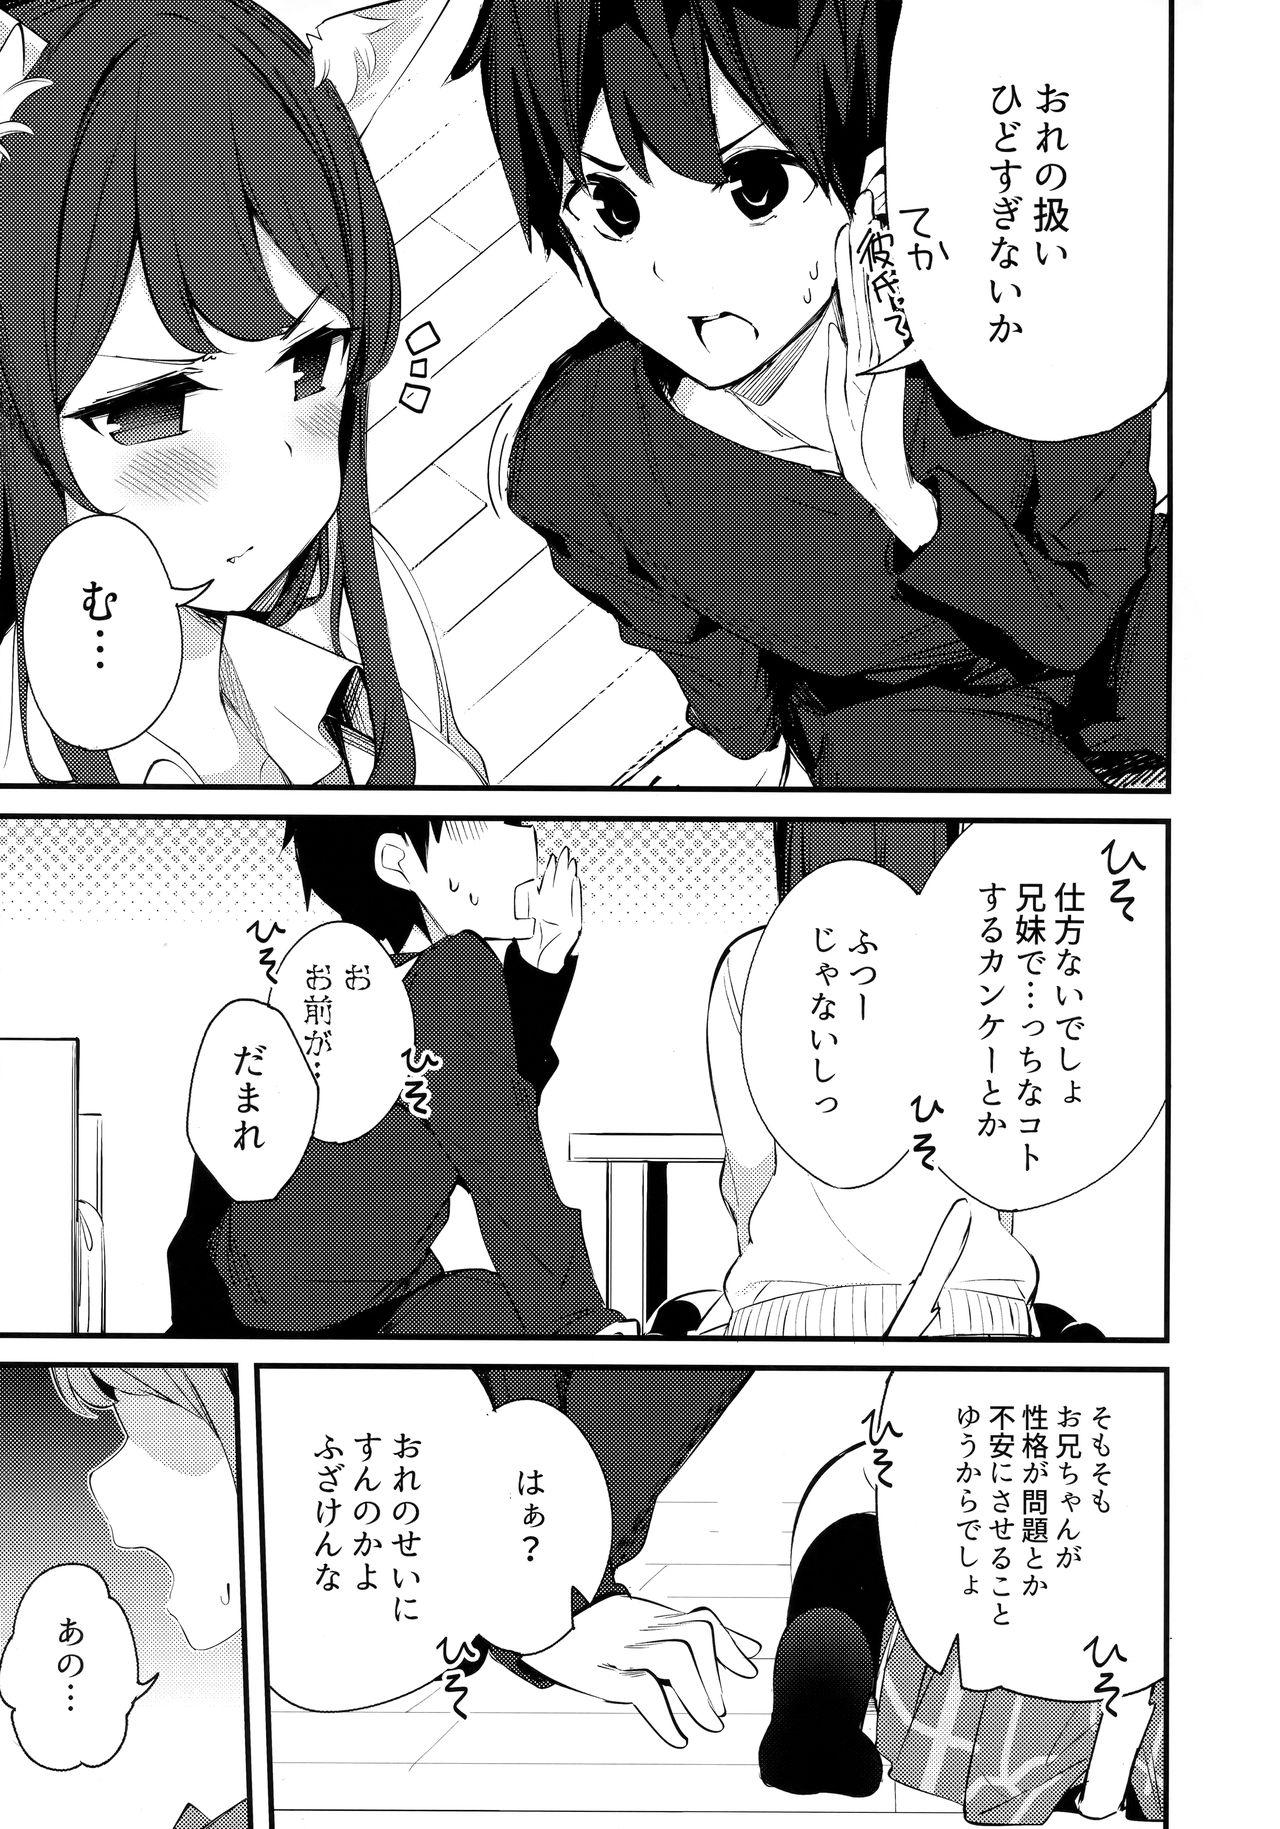 Pissing Imouto ga Neko ni Natteimashita. 3 - Original Lez - Page 8